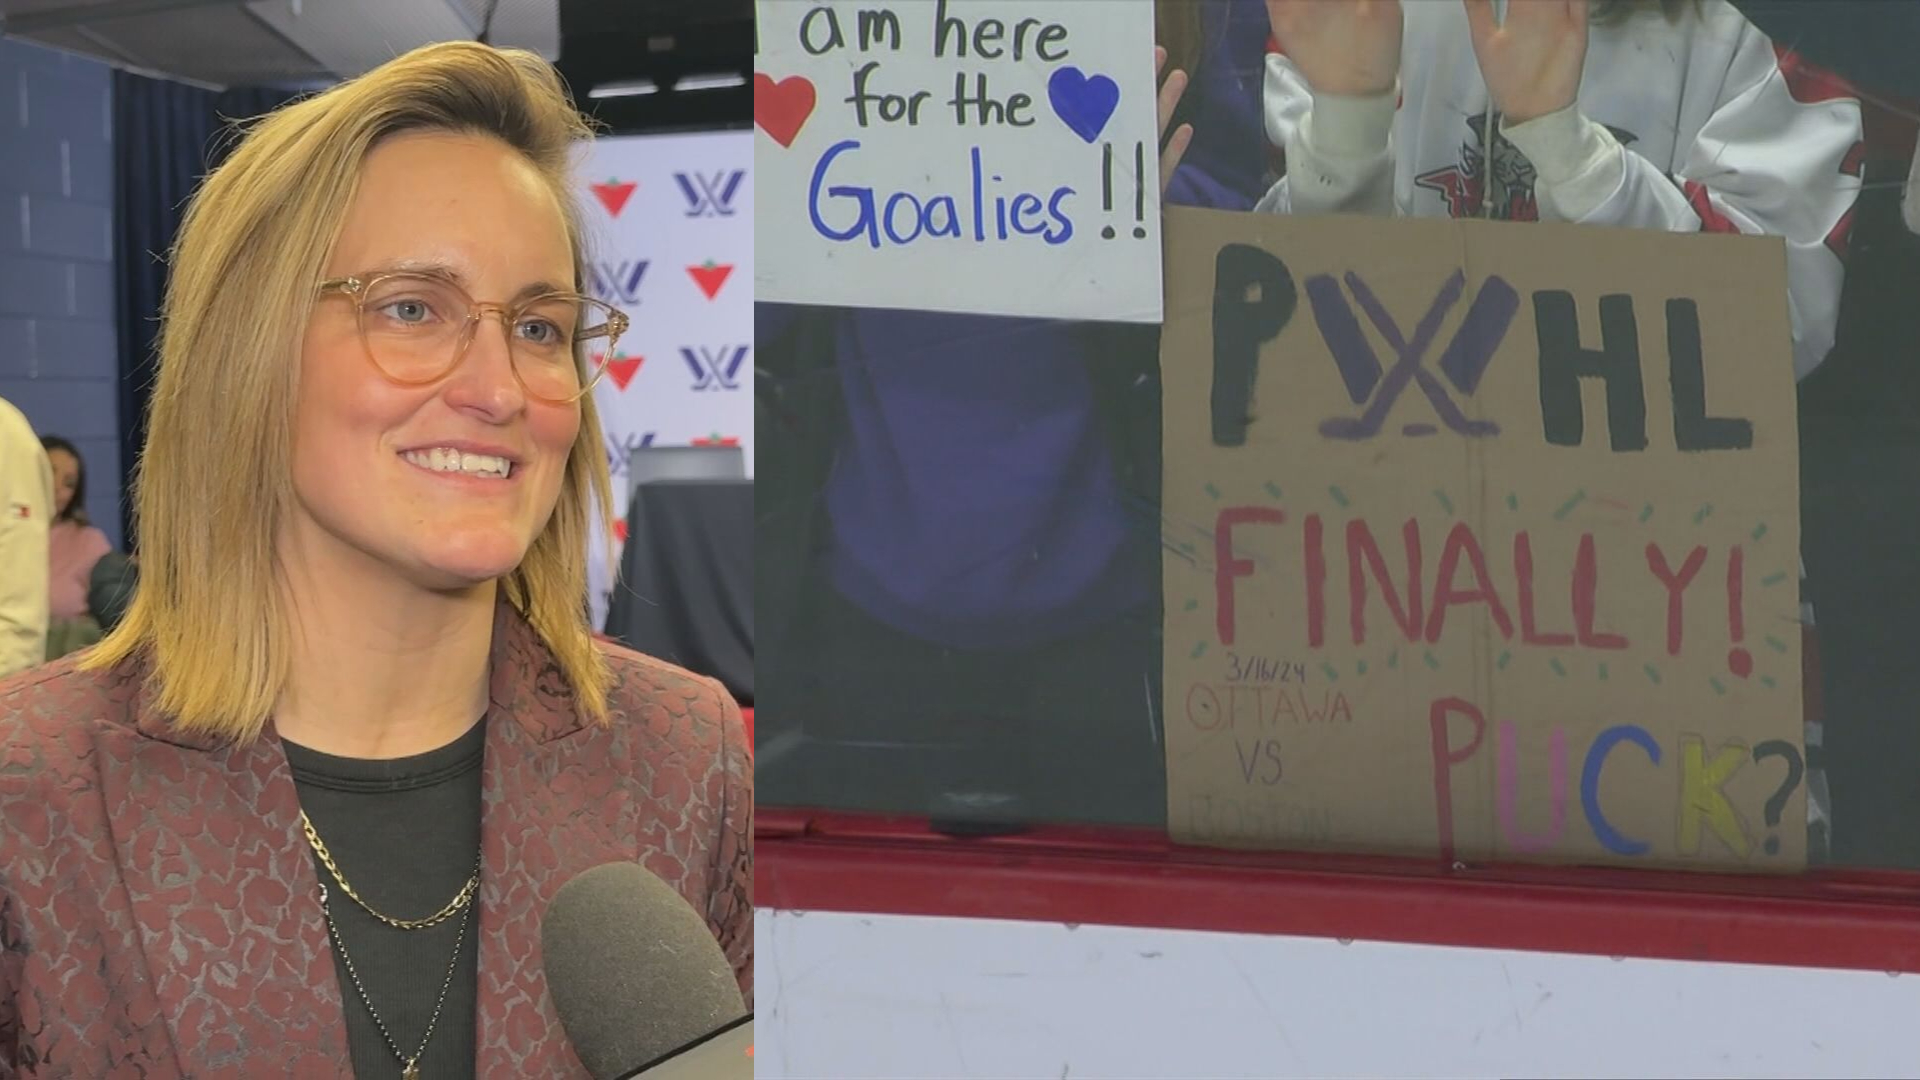 PWHL set to break women’s hockey attendance record in Montreal